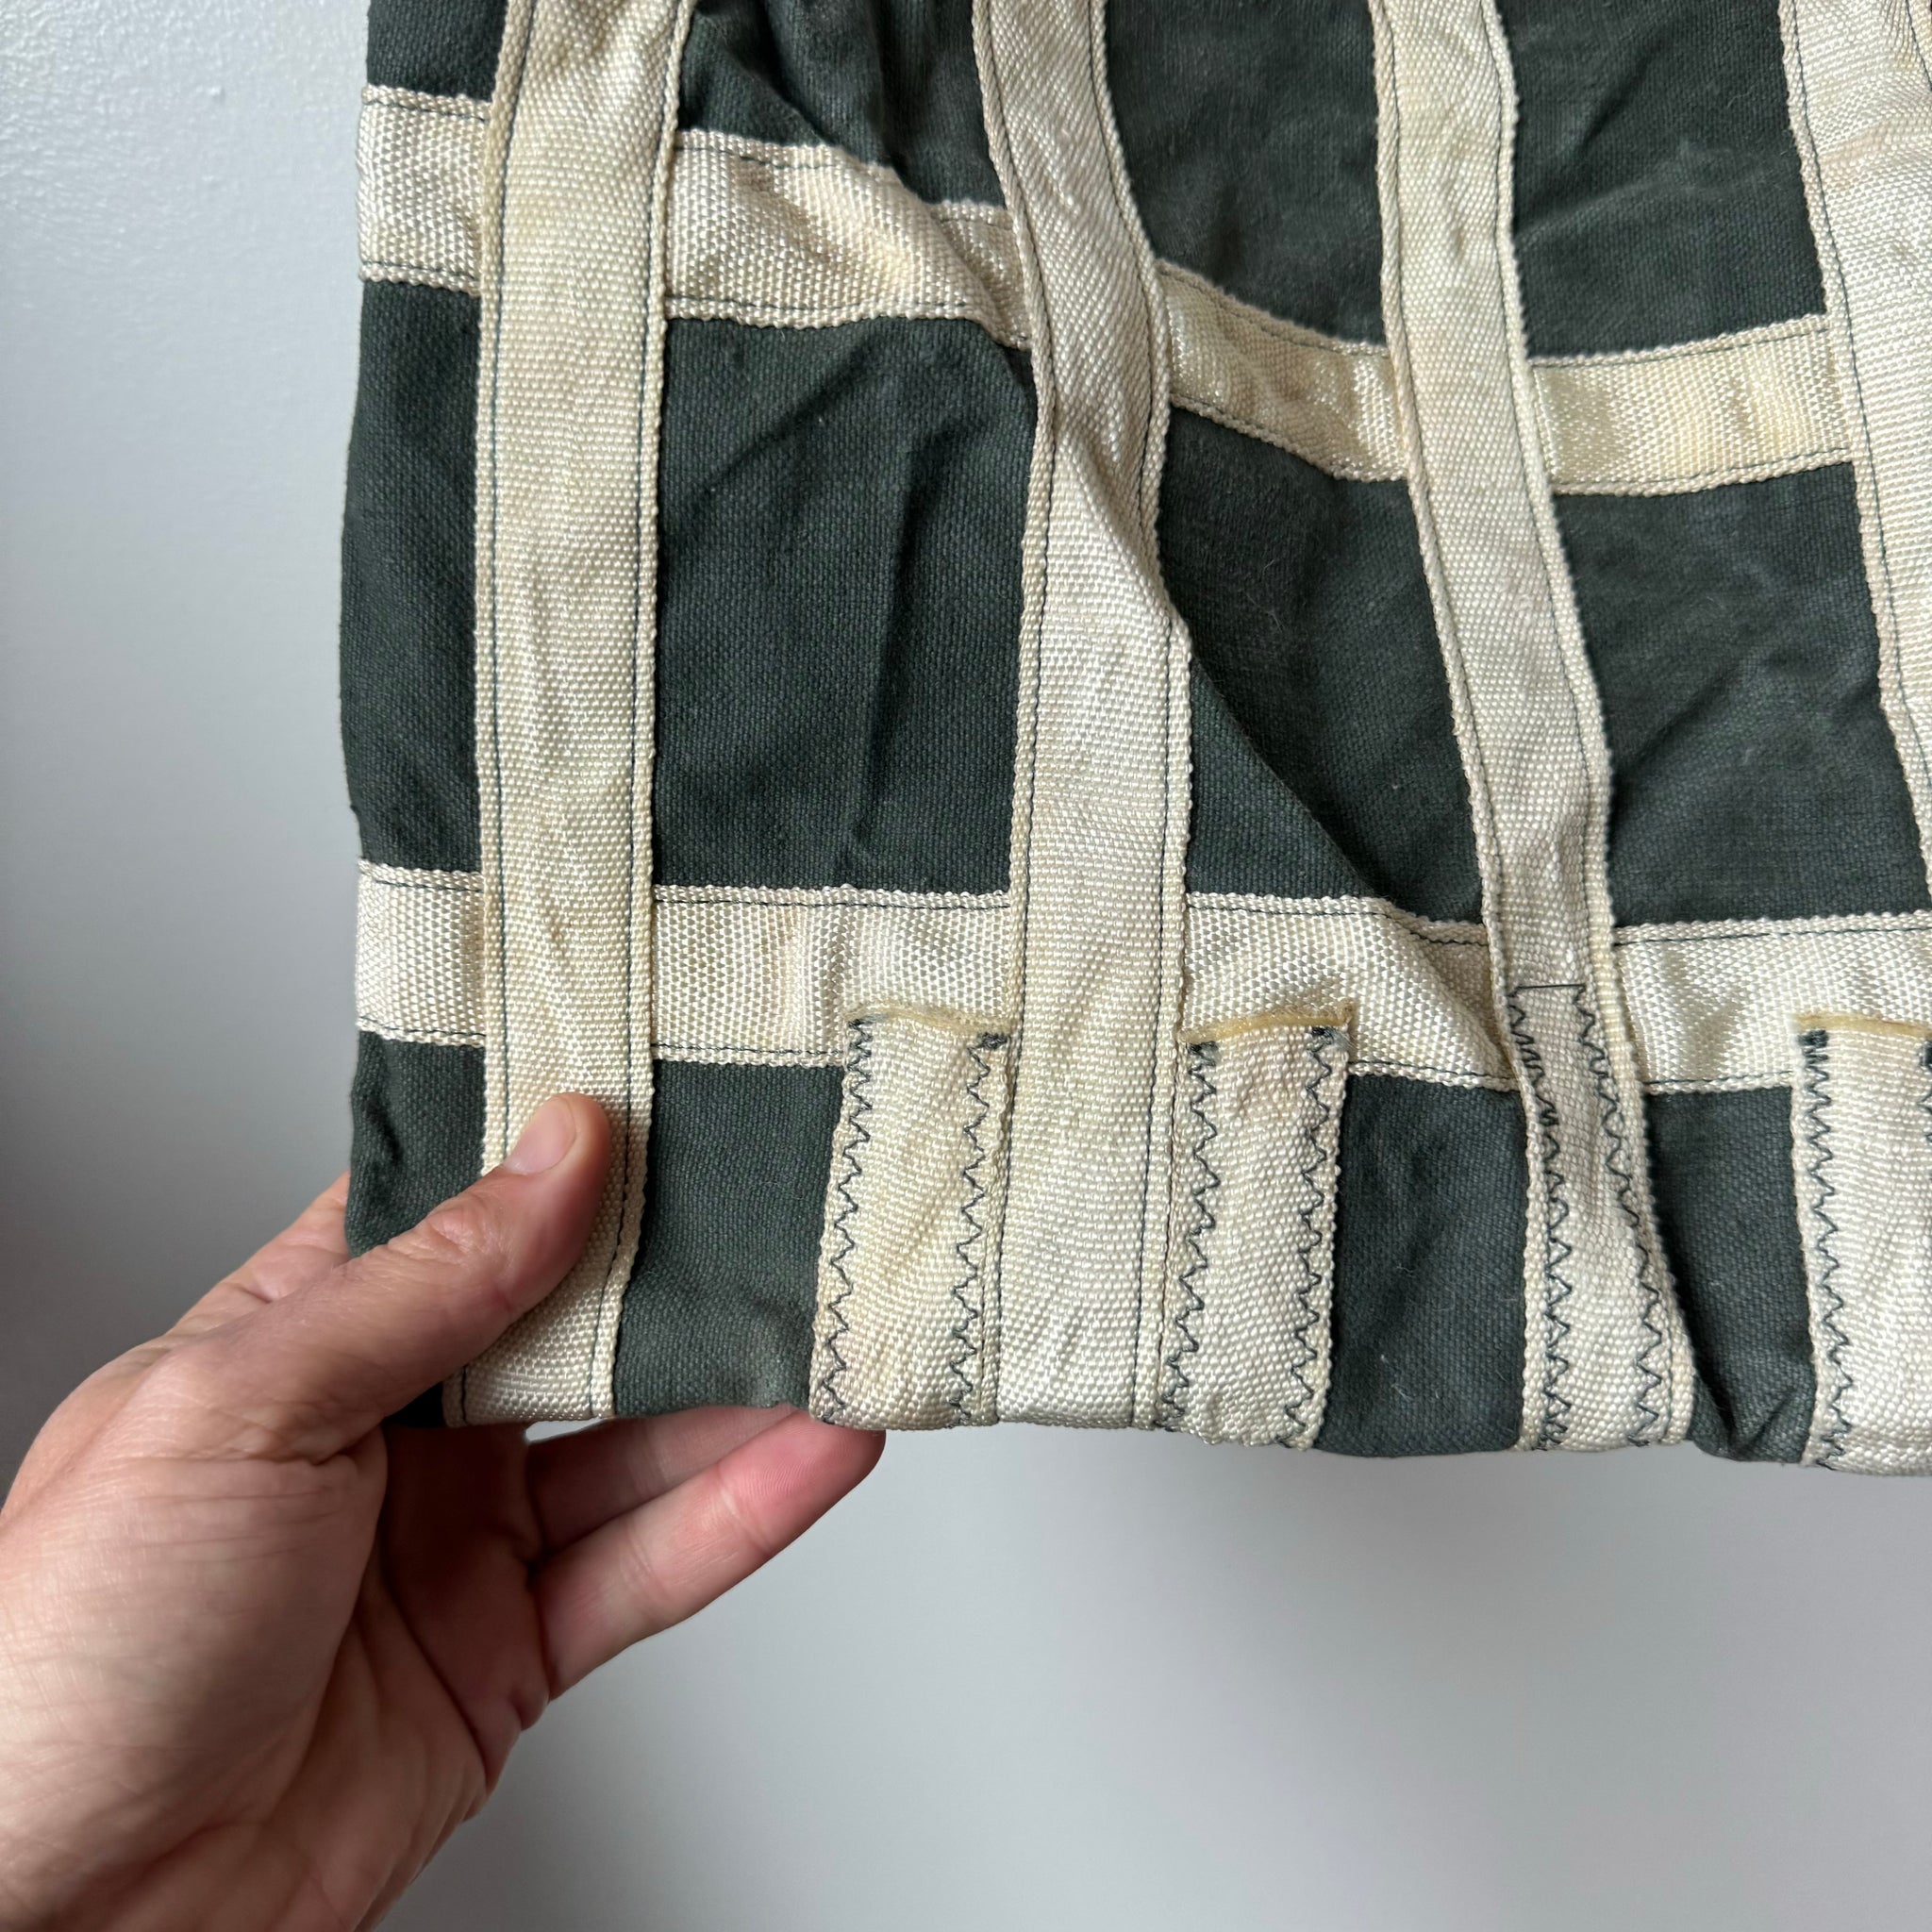 Vintage Grid Recycled Material Shoulder Bag